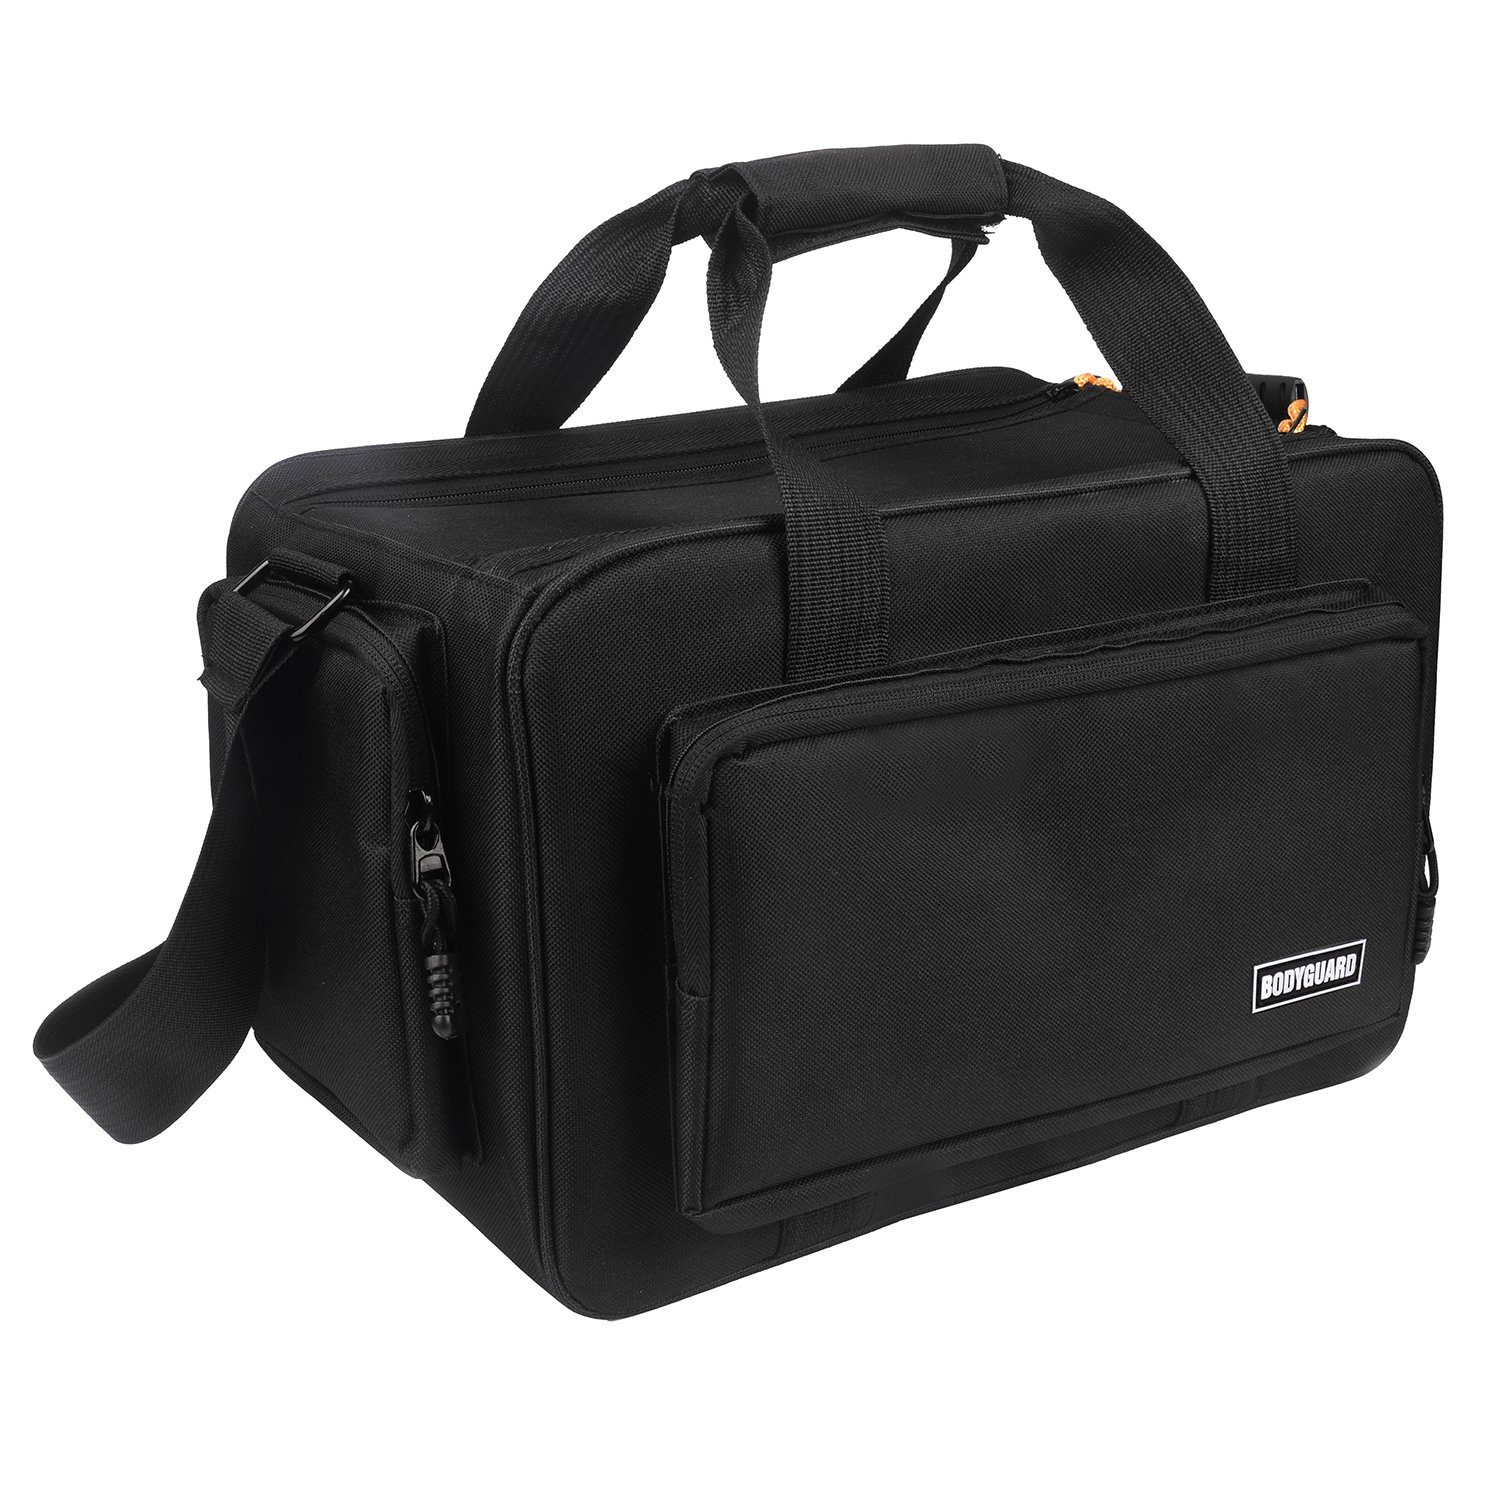 Bodyguard Fototasche SLR XL XXL XXXL Taschen schwarz, für große Foto und  Videokamera Tasche mit Variable Inneneinteilung für 5 Fächer